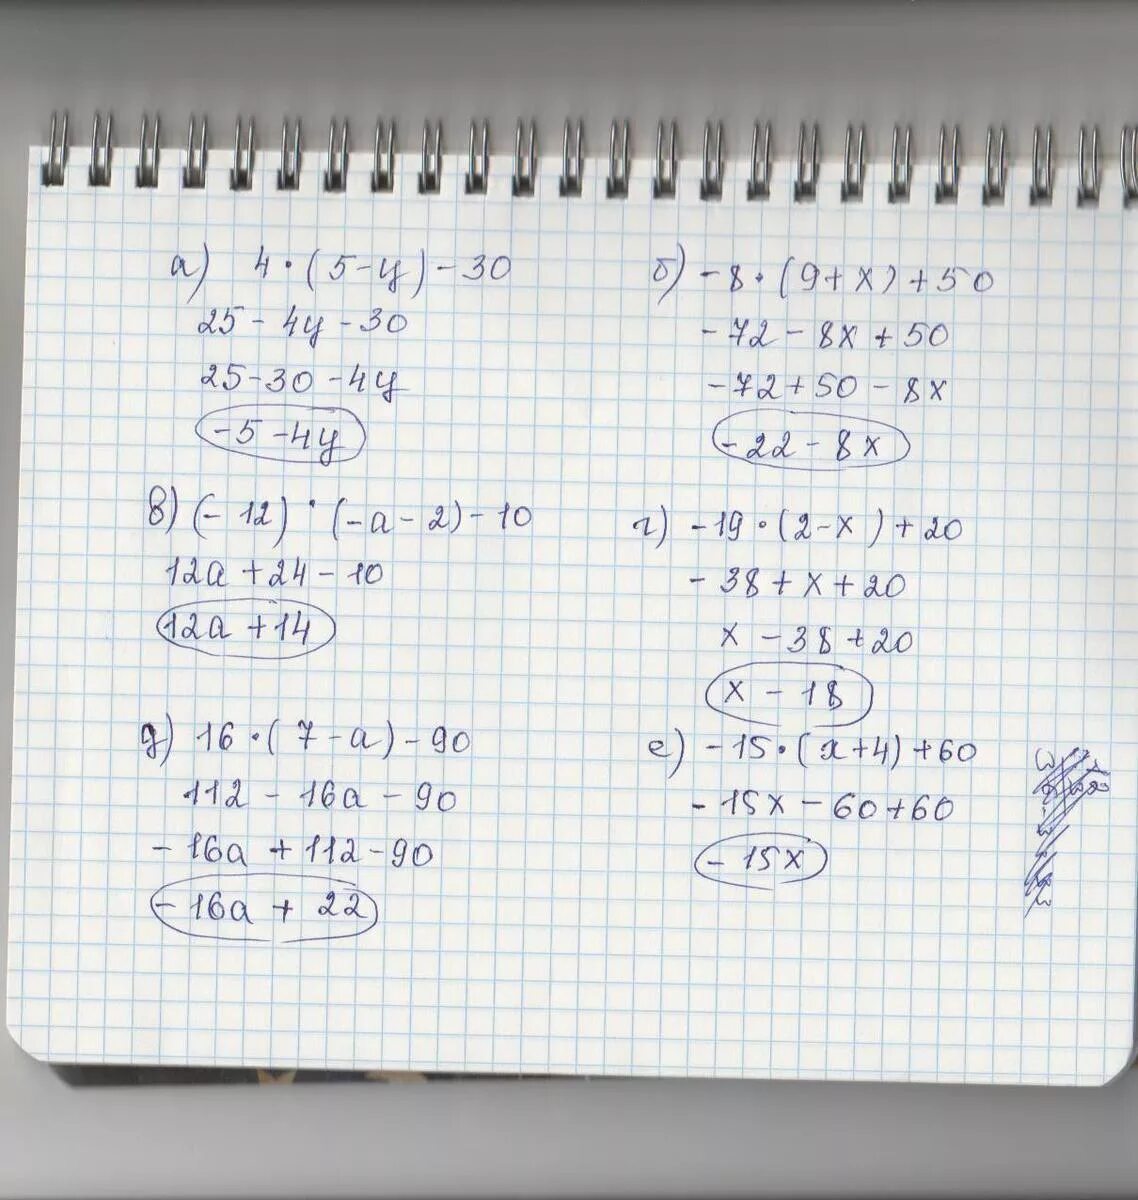 23x 10 5x2 0. 20-3(Х-5)<16-7х. 5/4-Х+5/Х=10/5. Решение 5х+12=60. 4нвк 60-12-19.